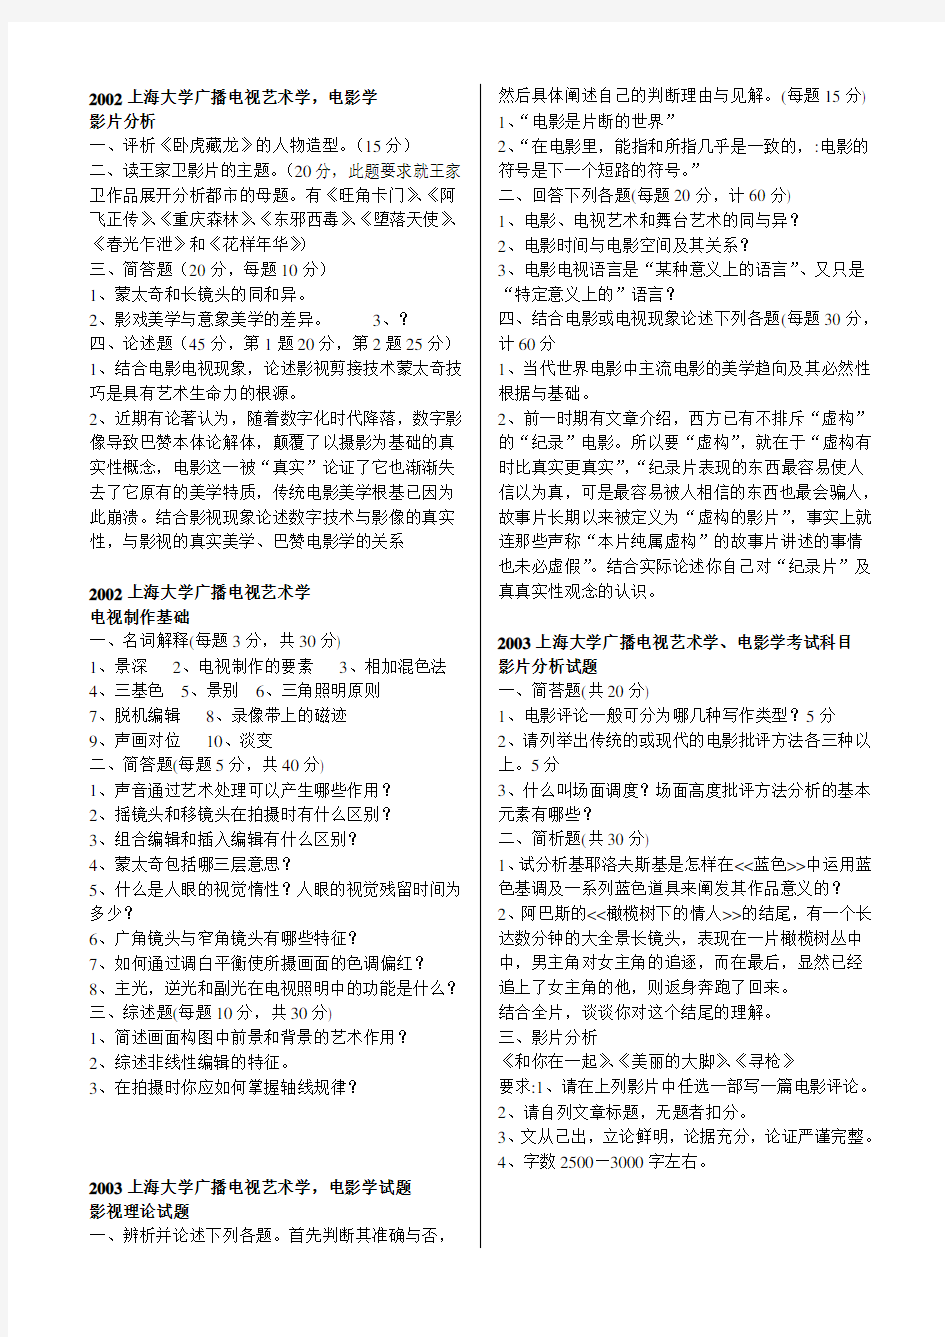 上海大学电影学考研历年真题(01-13)外加部分广电真题